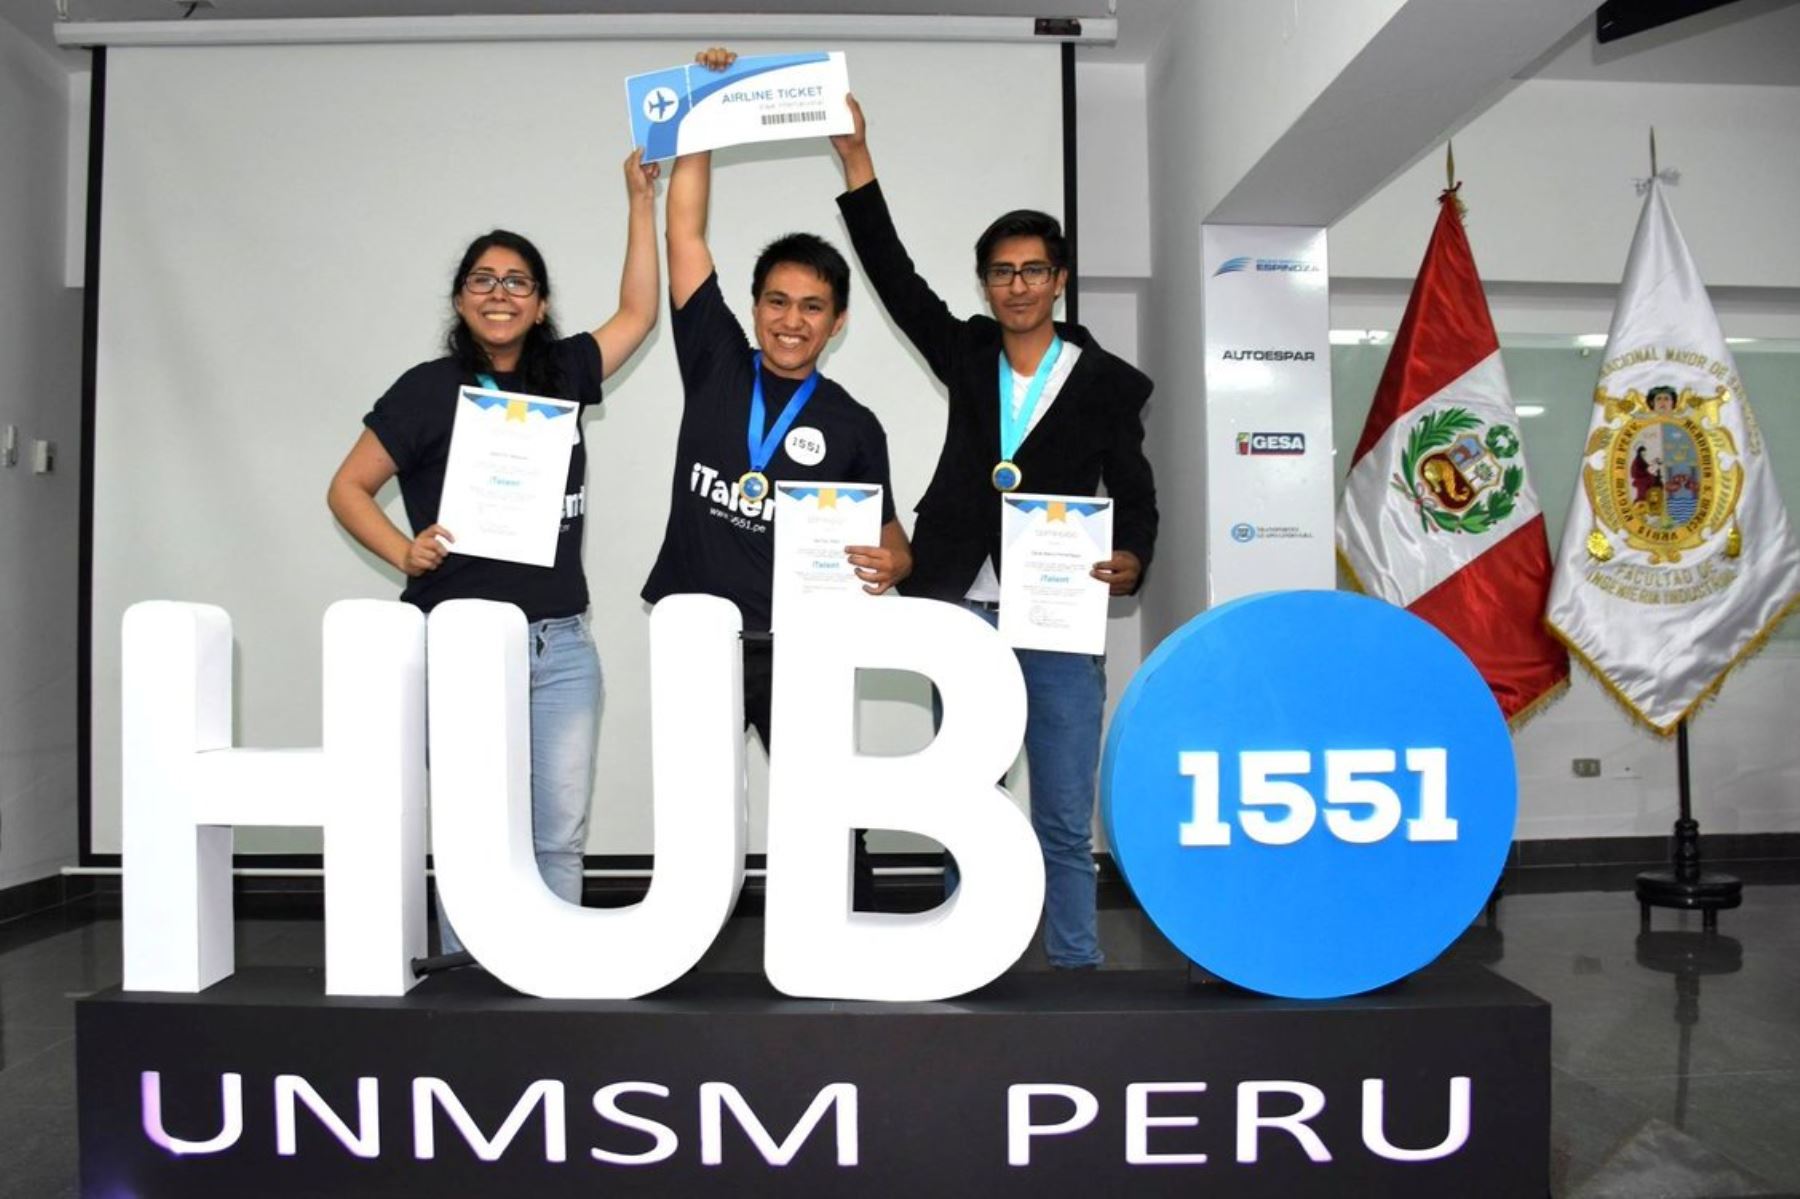 Estudiantes sanmarquinos premiados en iTalent por sus creaciones innovadoras. Foto: Andina/Difusión.